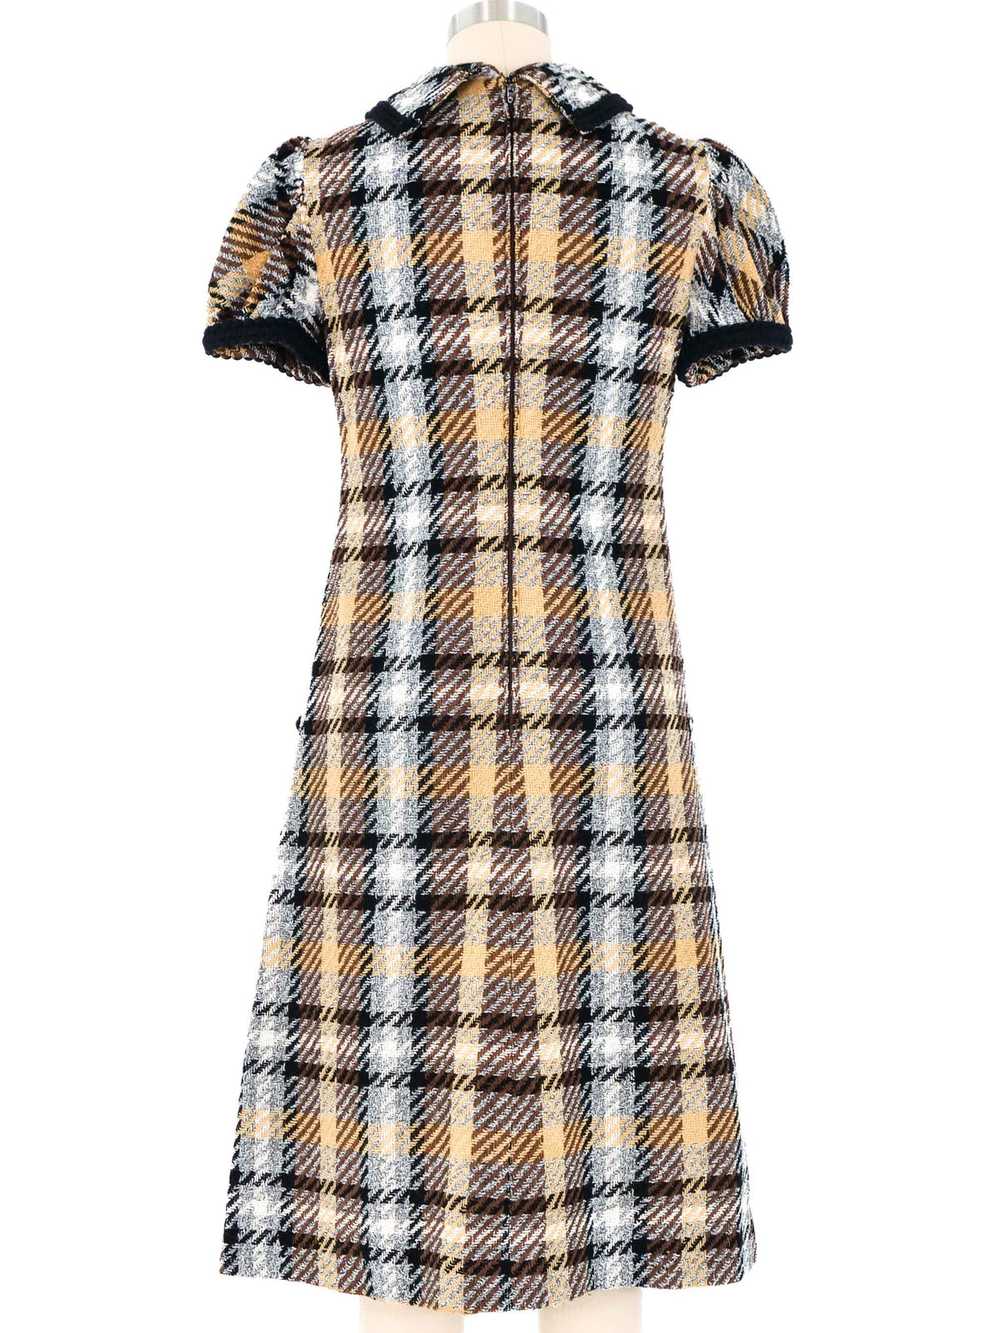 1970s Oscar de la Renta Tweed Dress - image 4